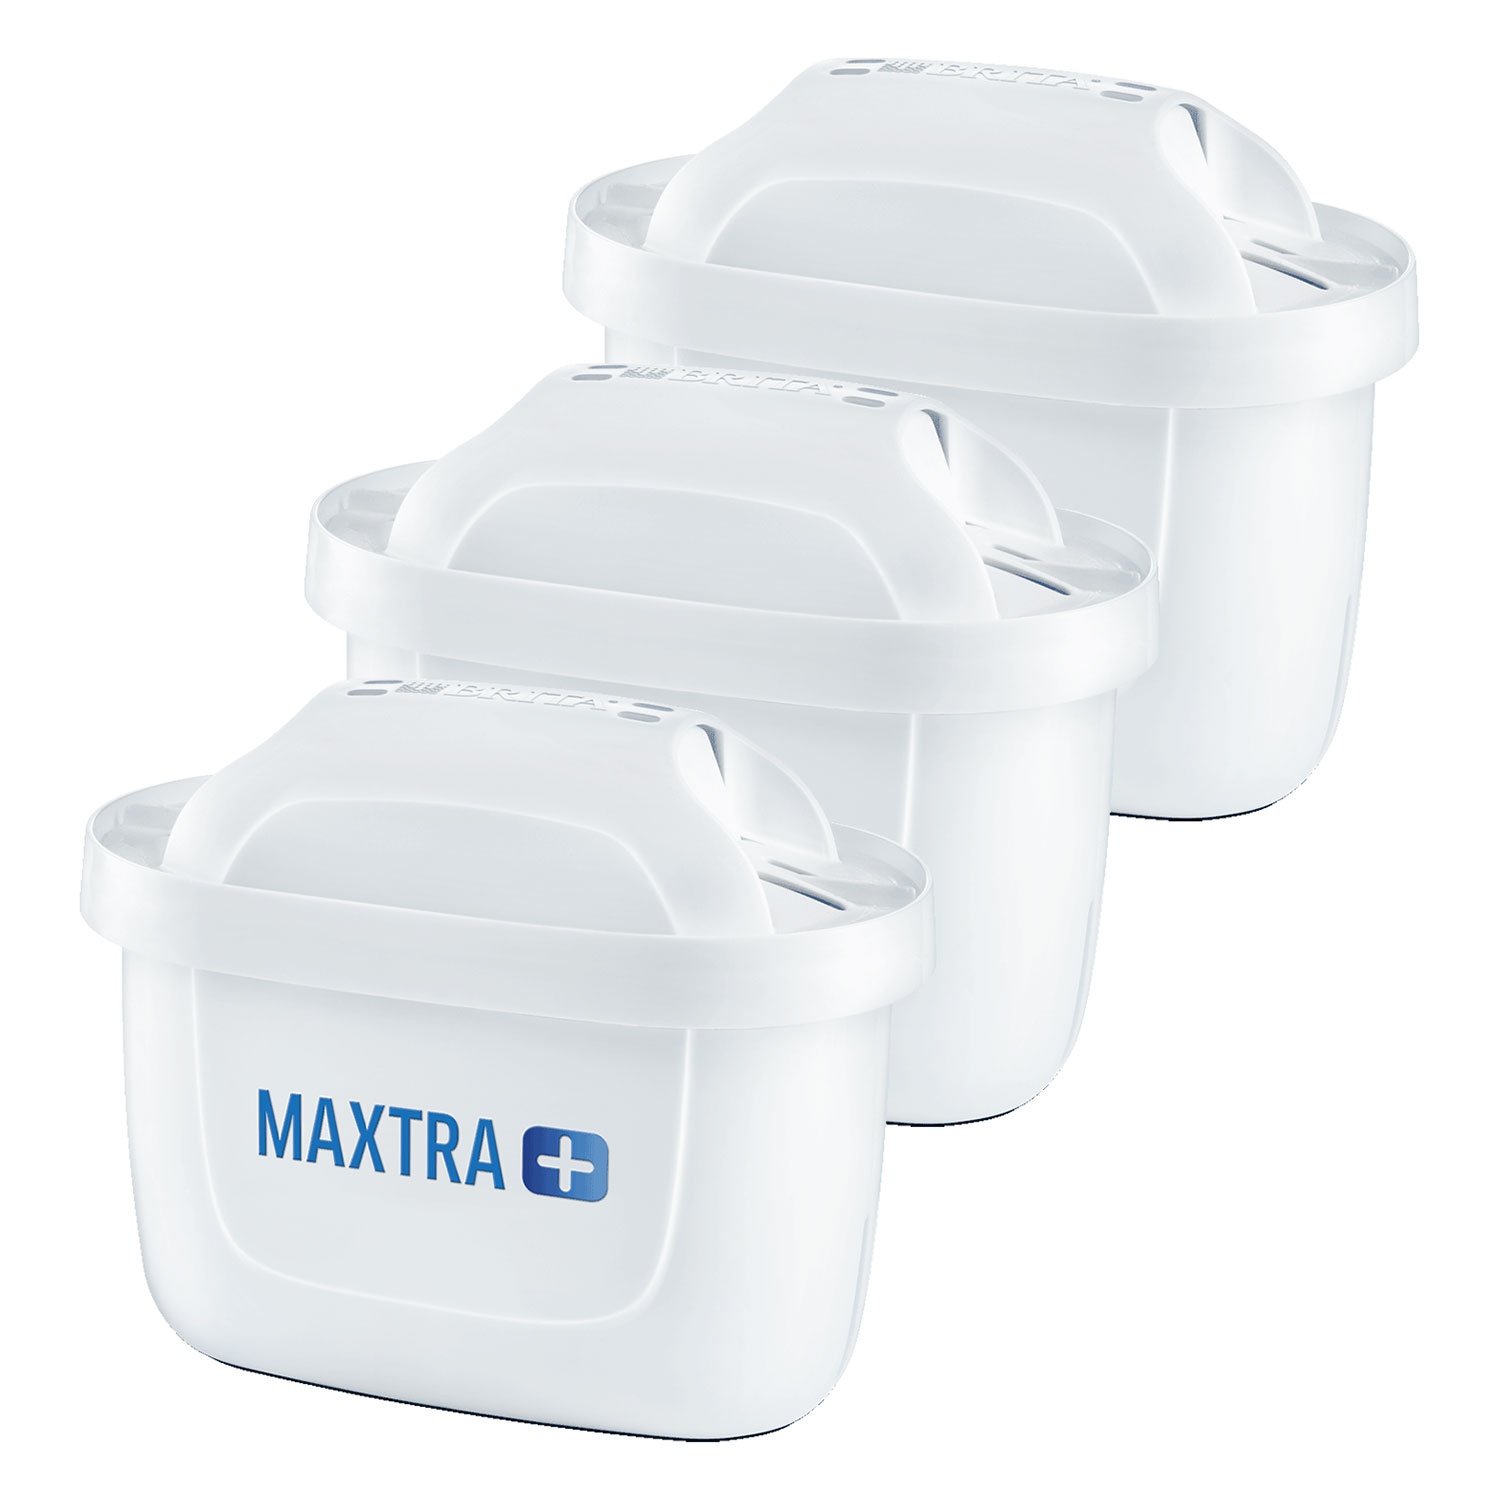 BRITA® Wasserfilter-Kartusche MAXTRA+, 3er-Packung